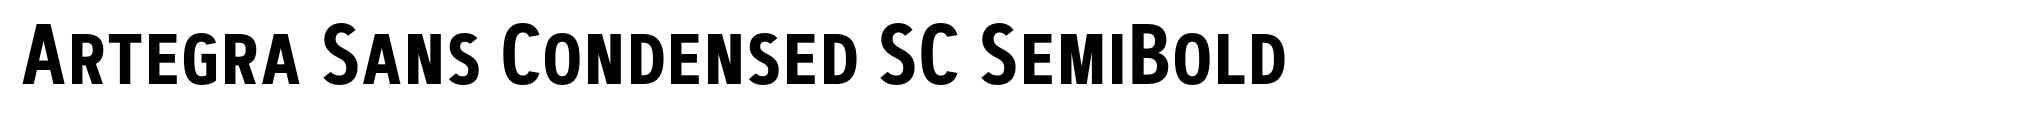 Artegra Sans Condensed SC SemiBold image